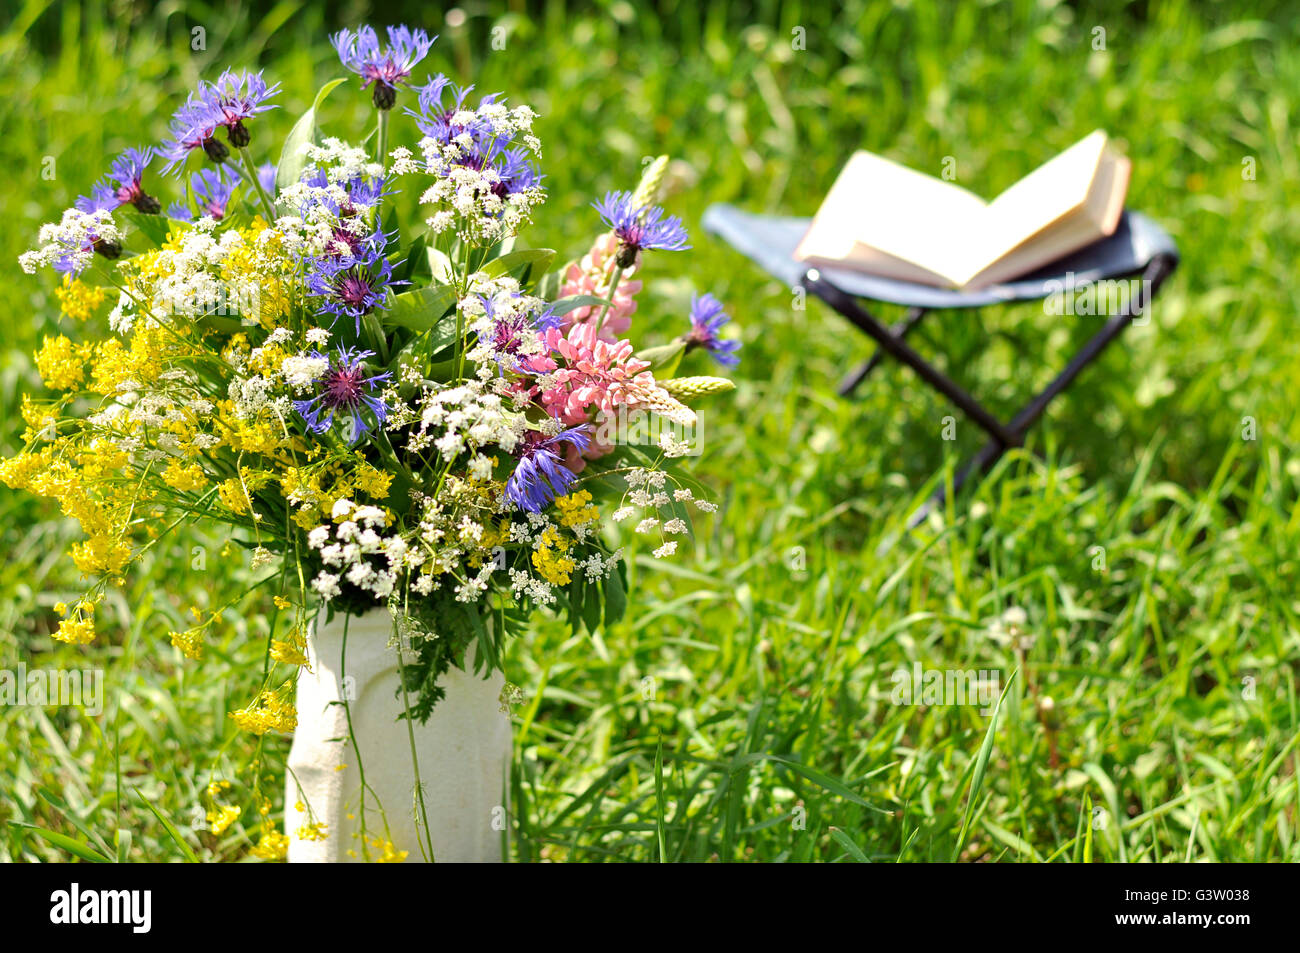 Bouquet de fleurs sauvages et un livre ouvert dans le pré Photo Stock -  Alamy